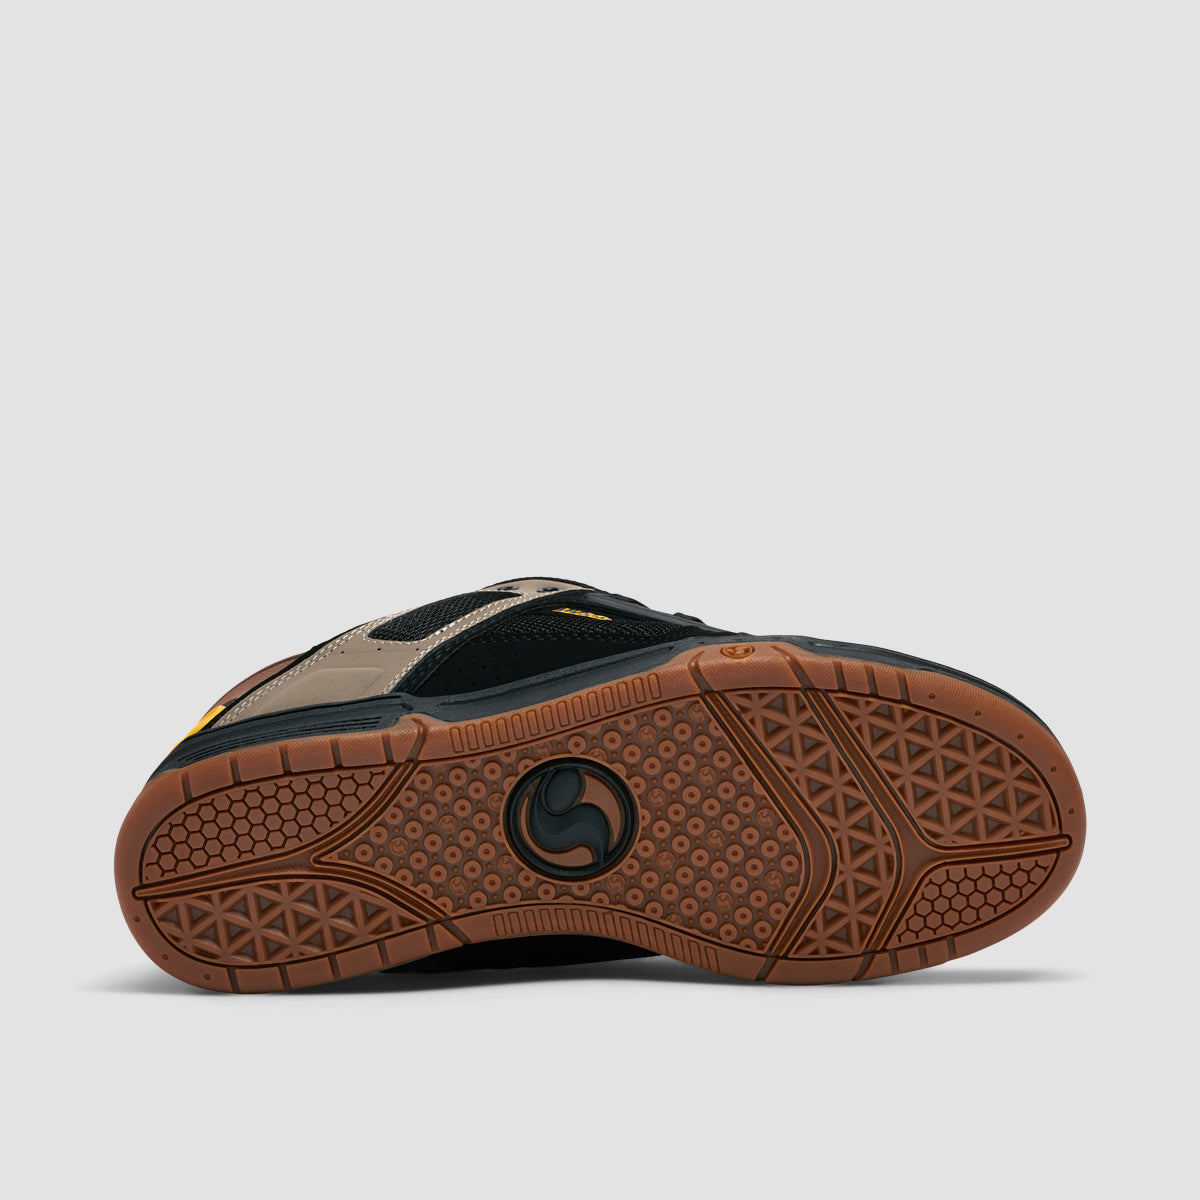 DVS Comanche Shoes - Brindle/Black/Yellow Nubuck